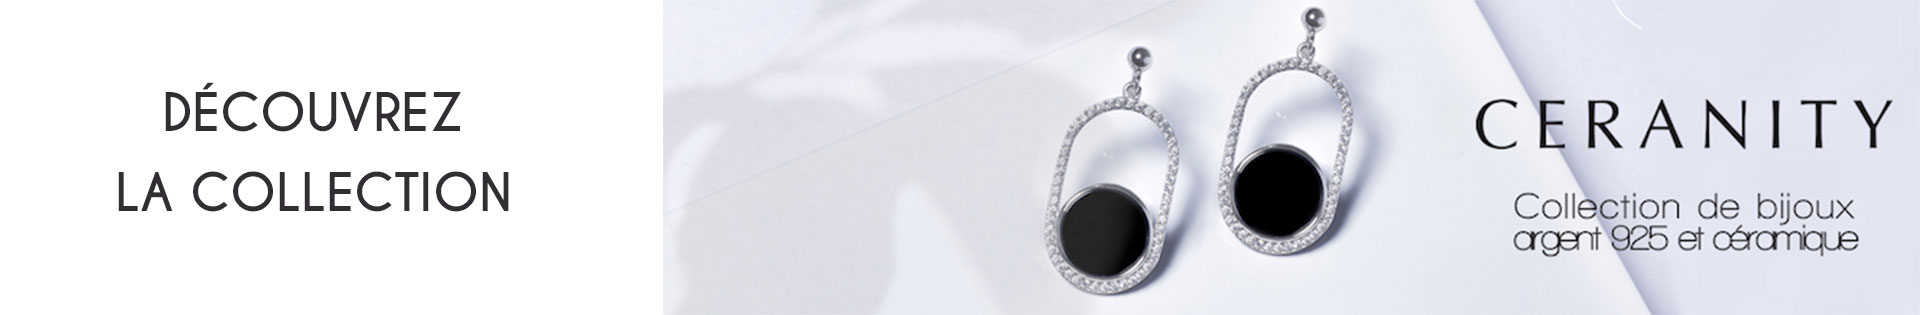 Marques de bijoux - Ceranity Silver